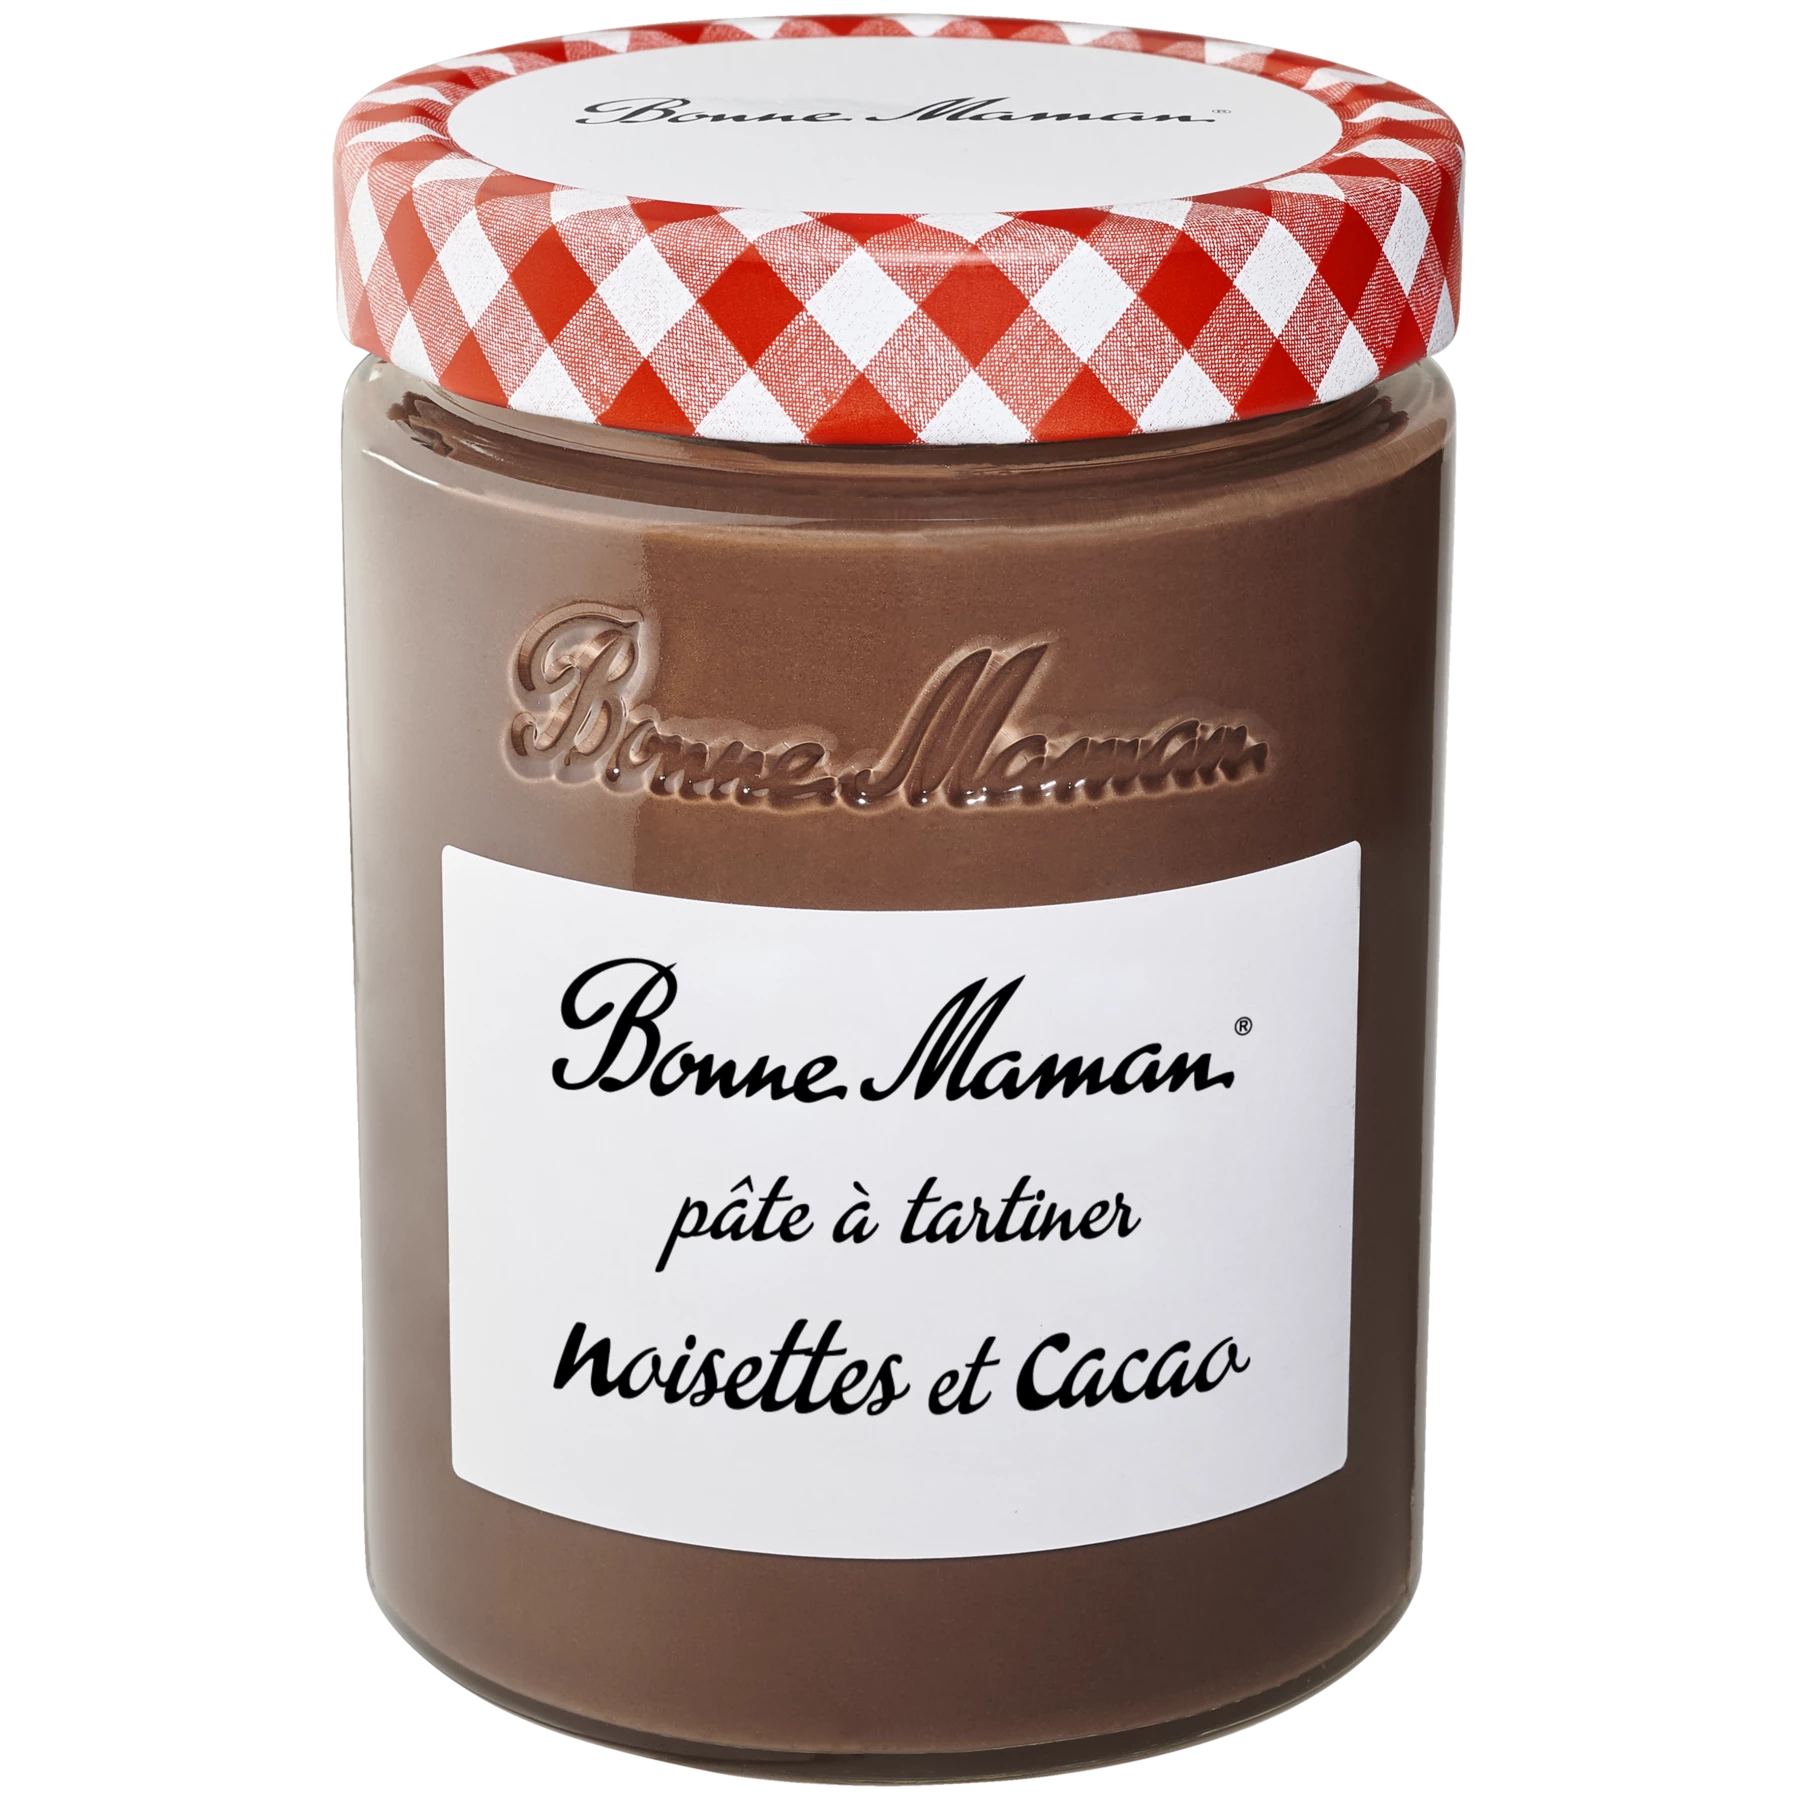 Crema de avellanas y cacao 580g - BONNE MAMAN